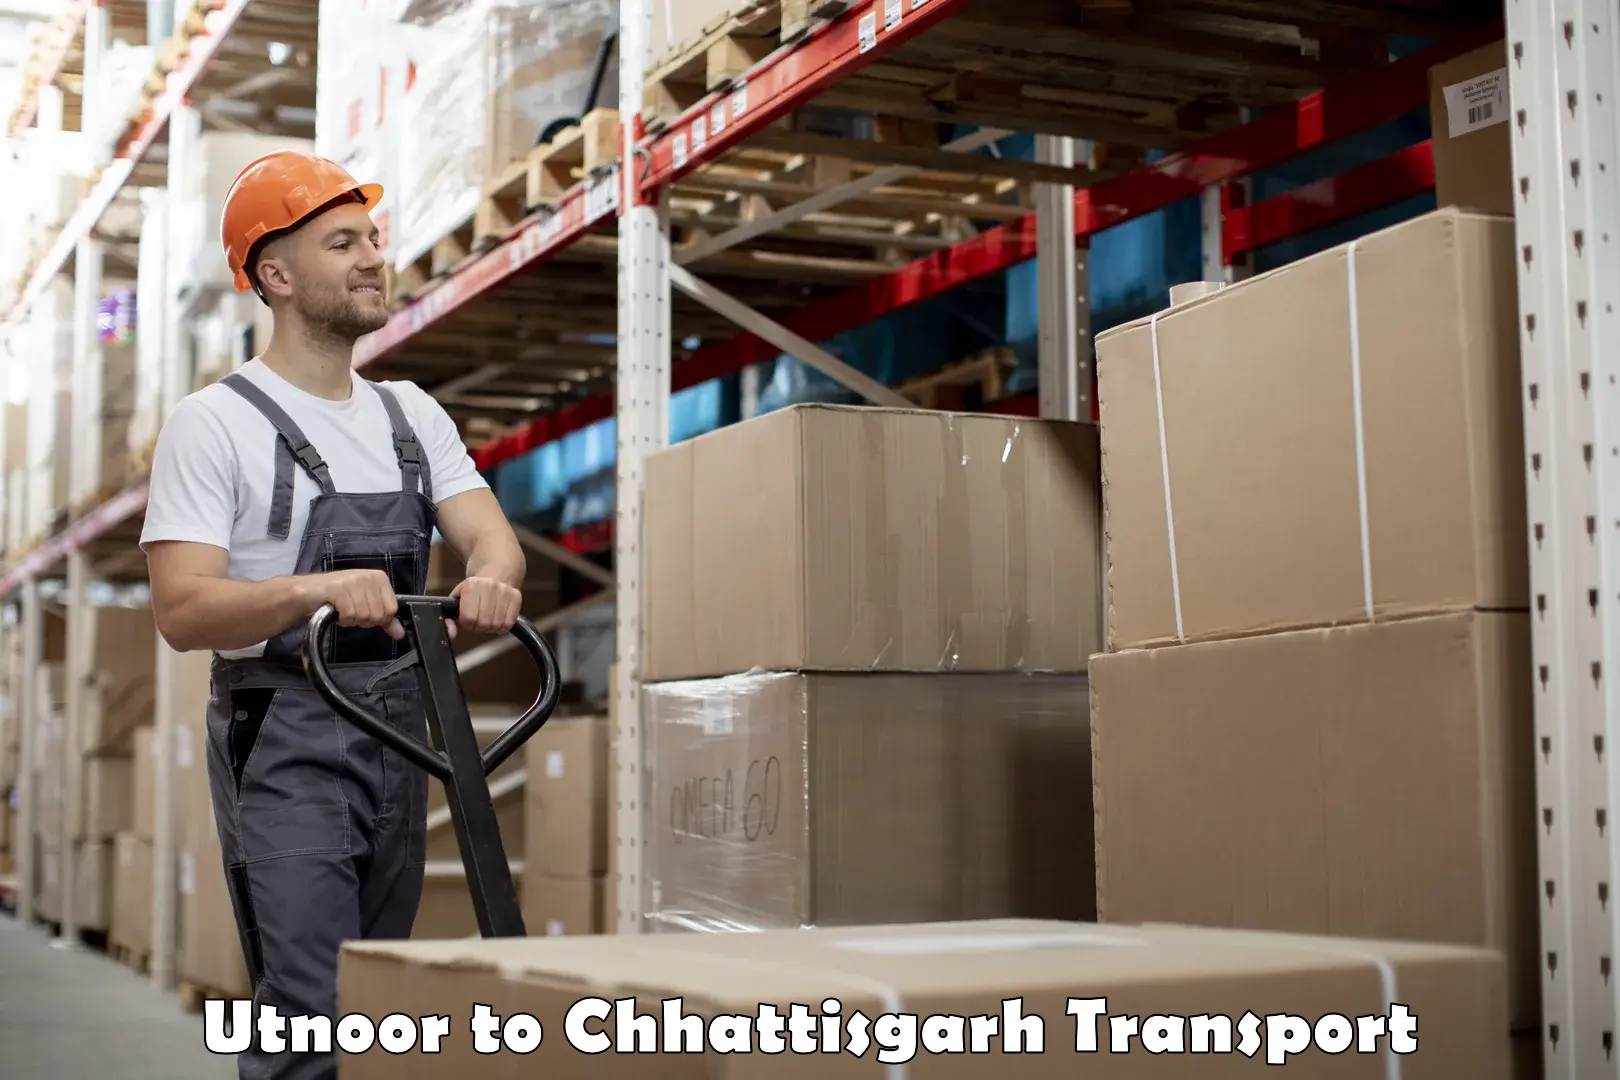 International cargo transportation services Utnoor to Patna Chhattisgarh